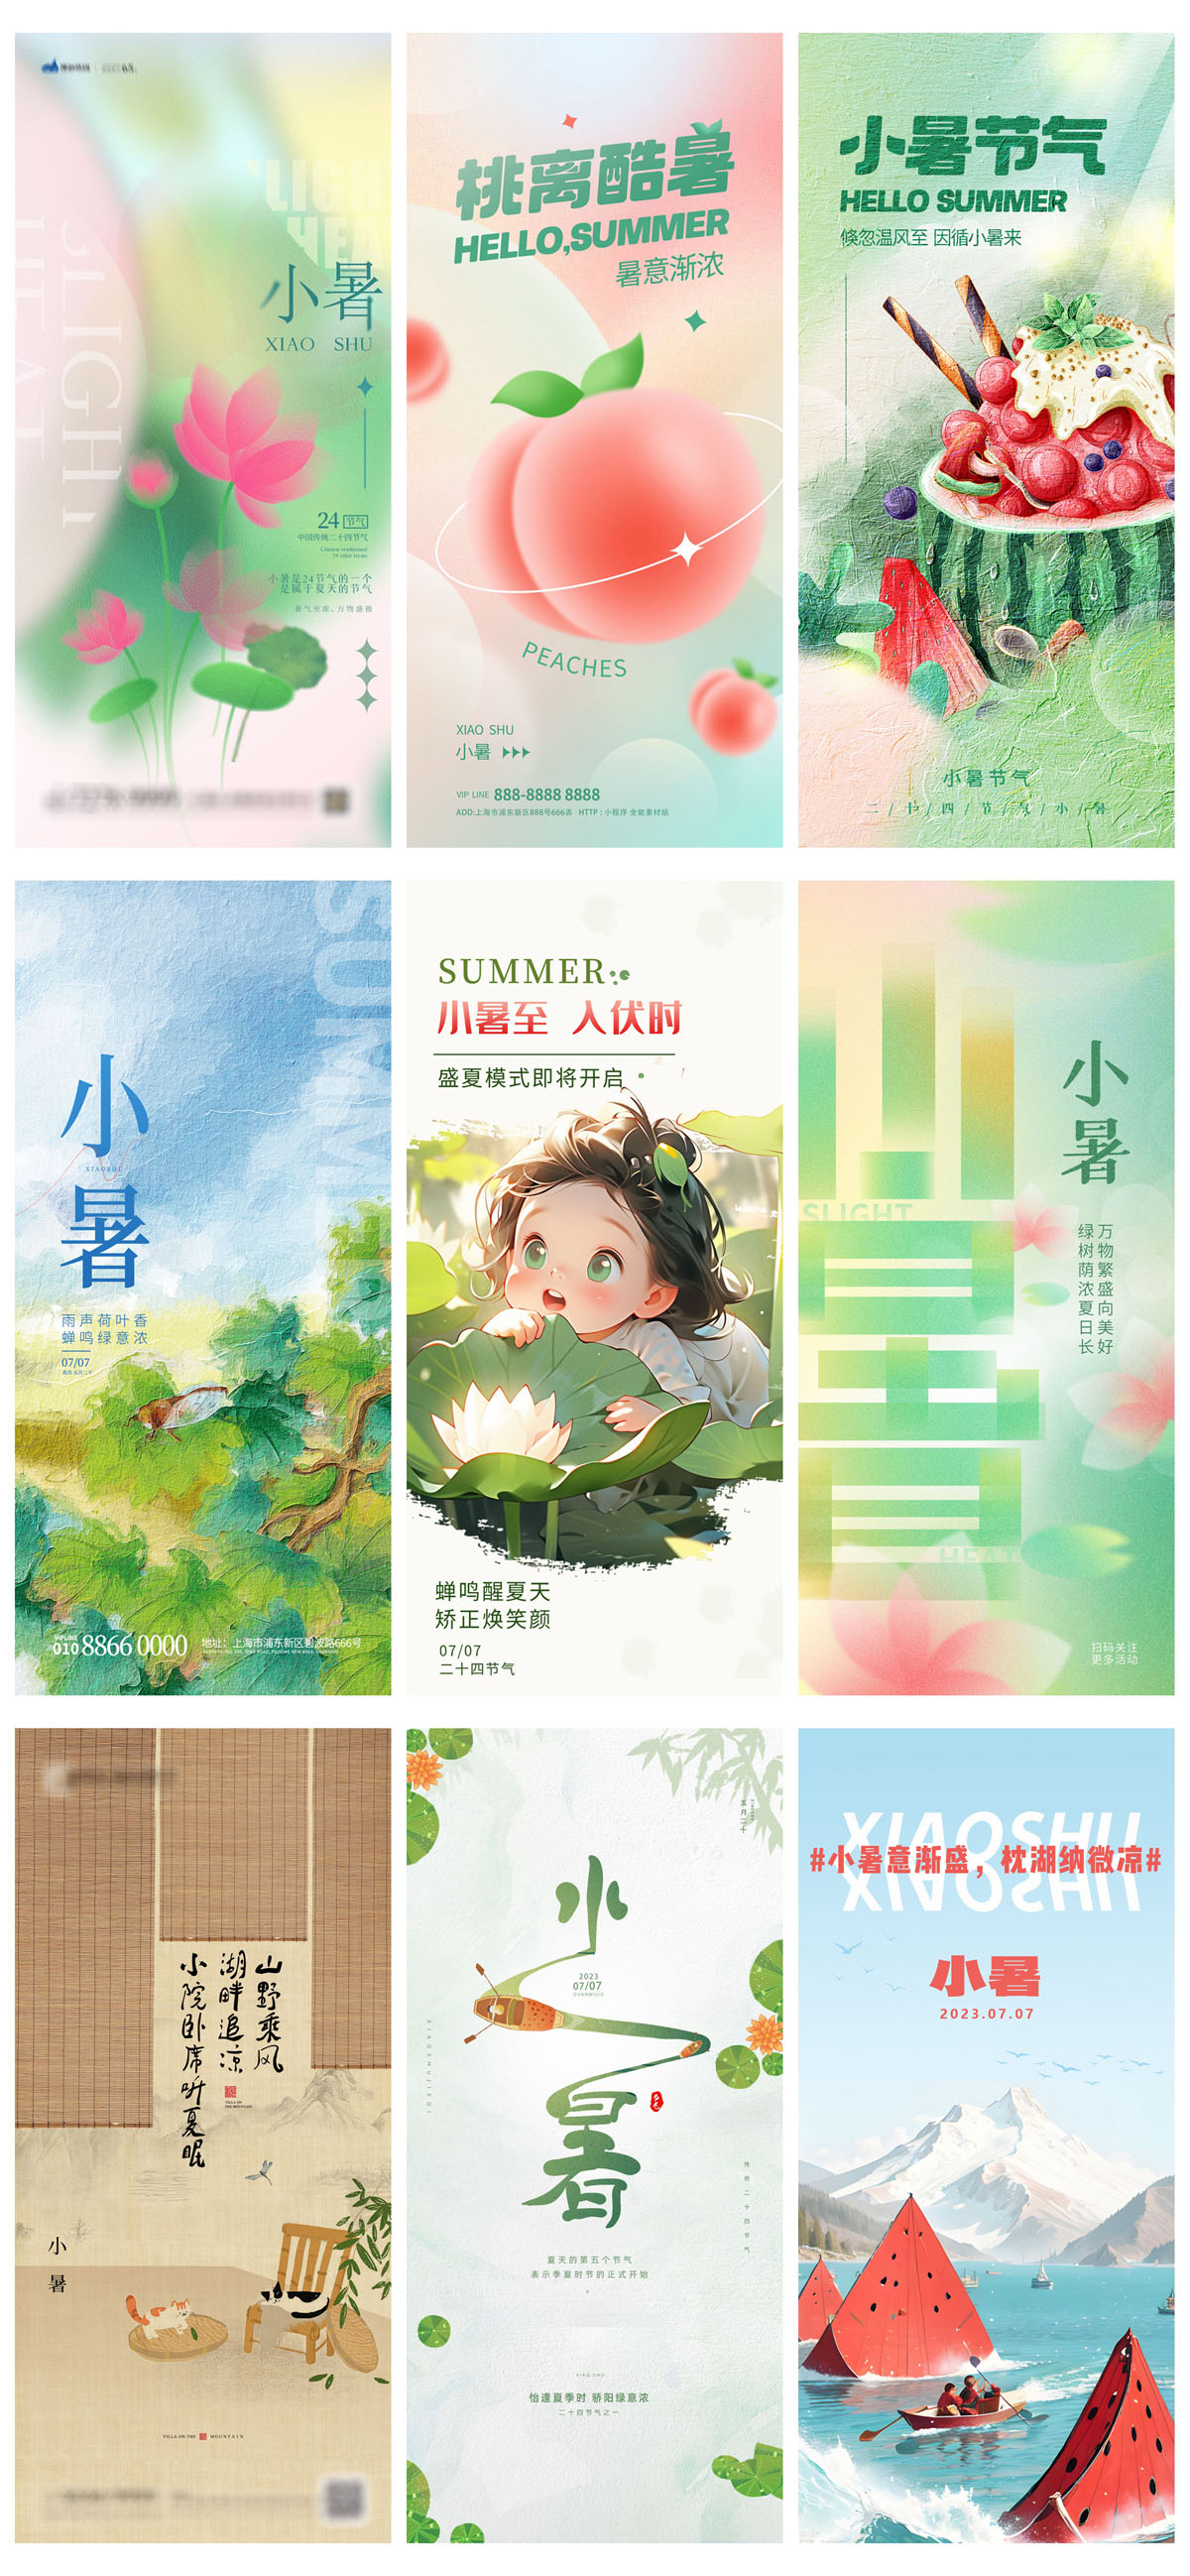 93款中国风24节气小暑宣传海报PSD模板 设计素材 第13张